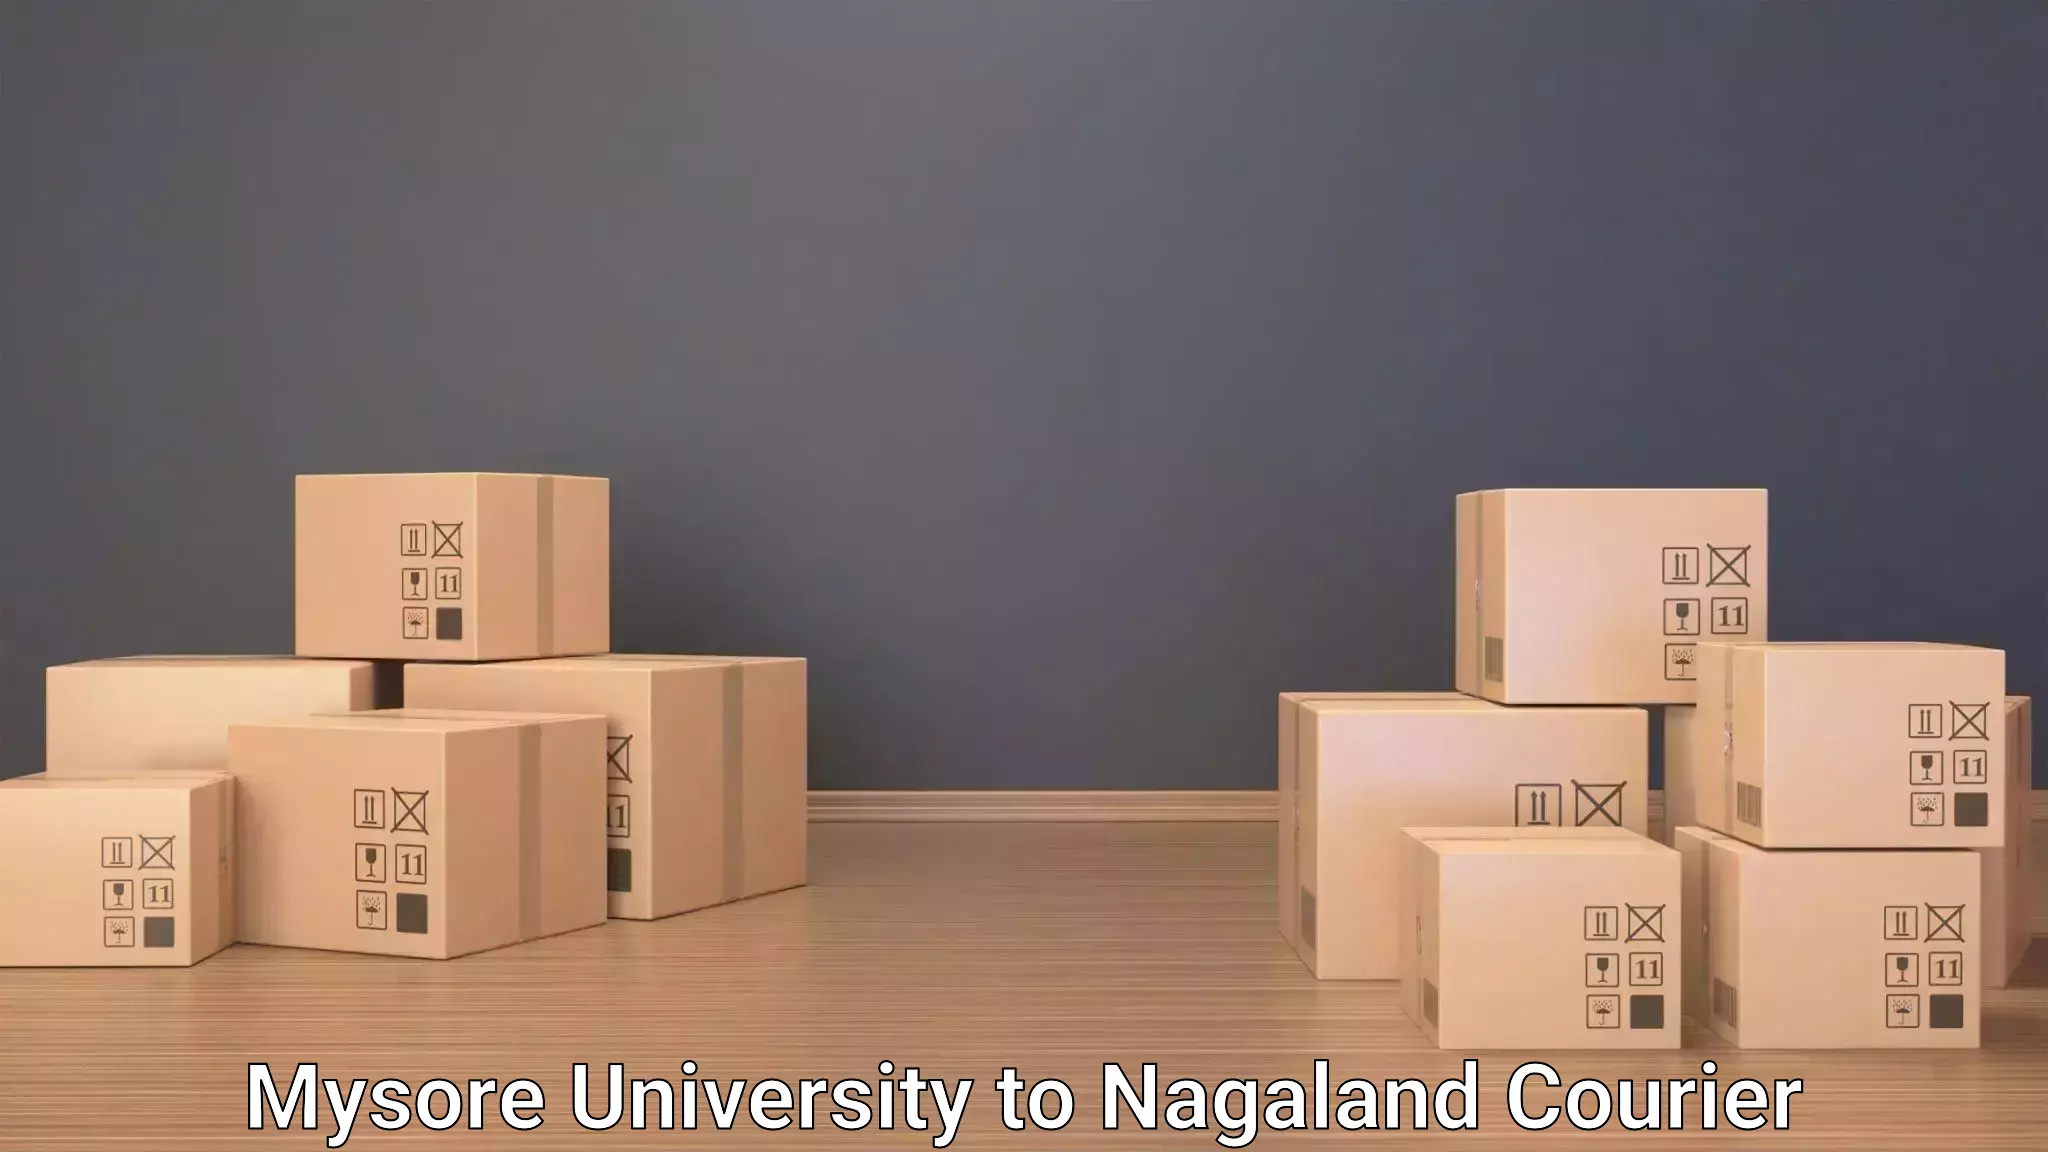 Same day luggage service Mysore University to Nagaland